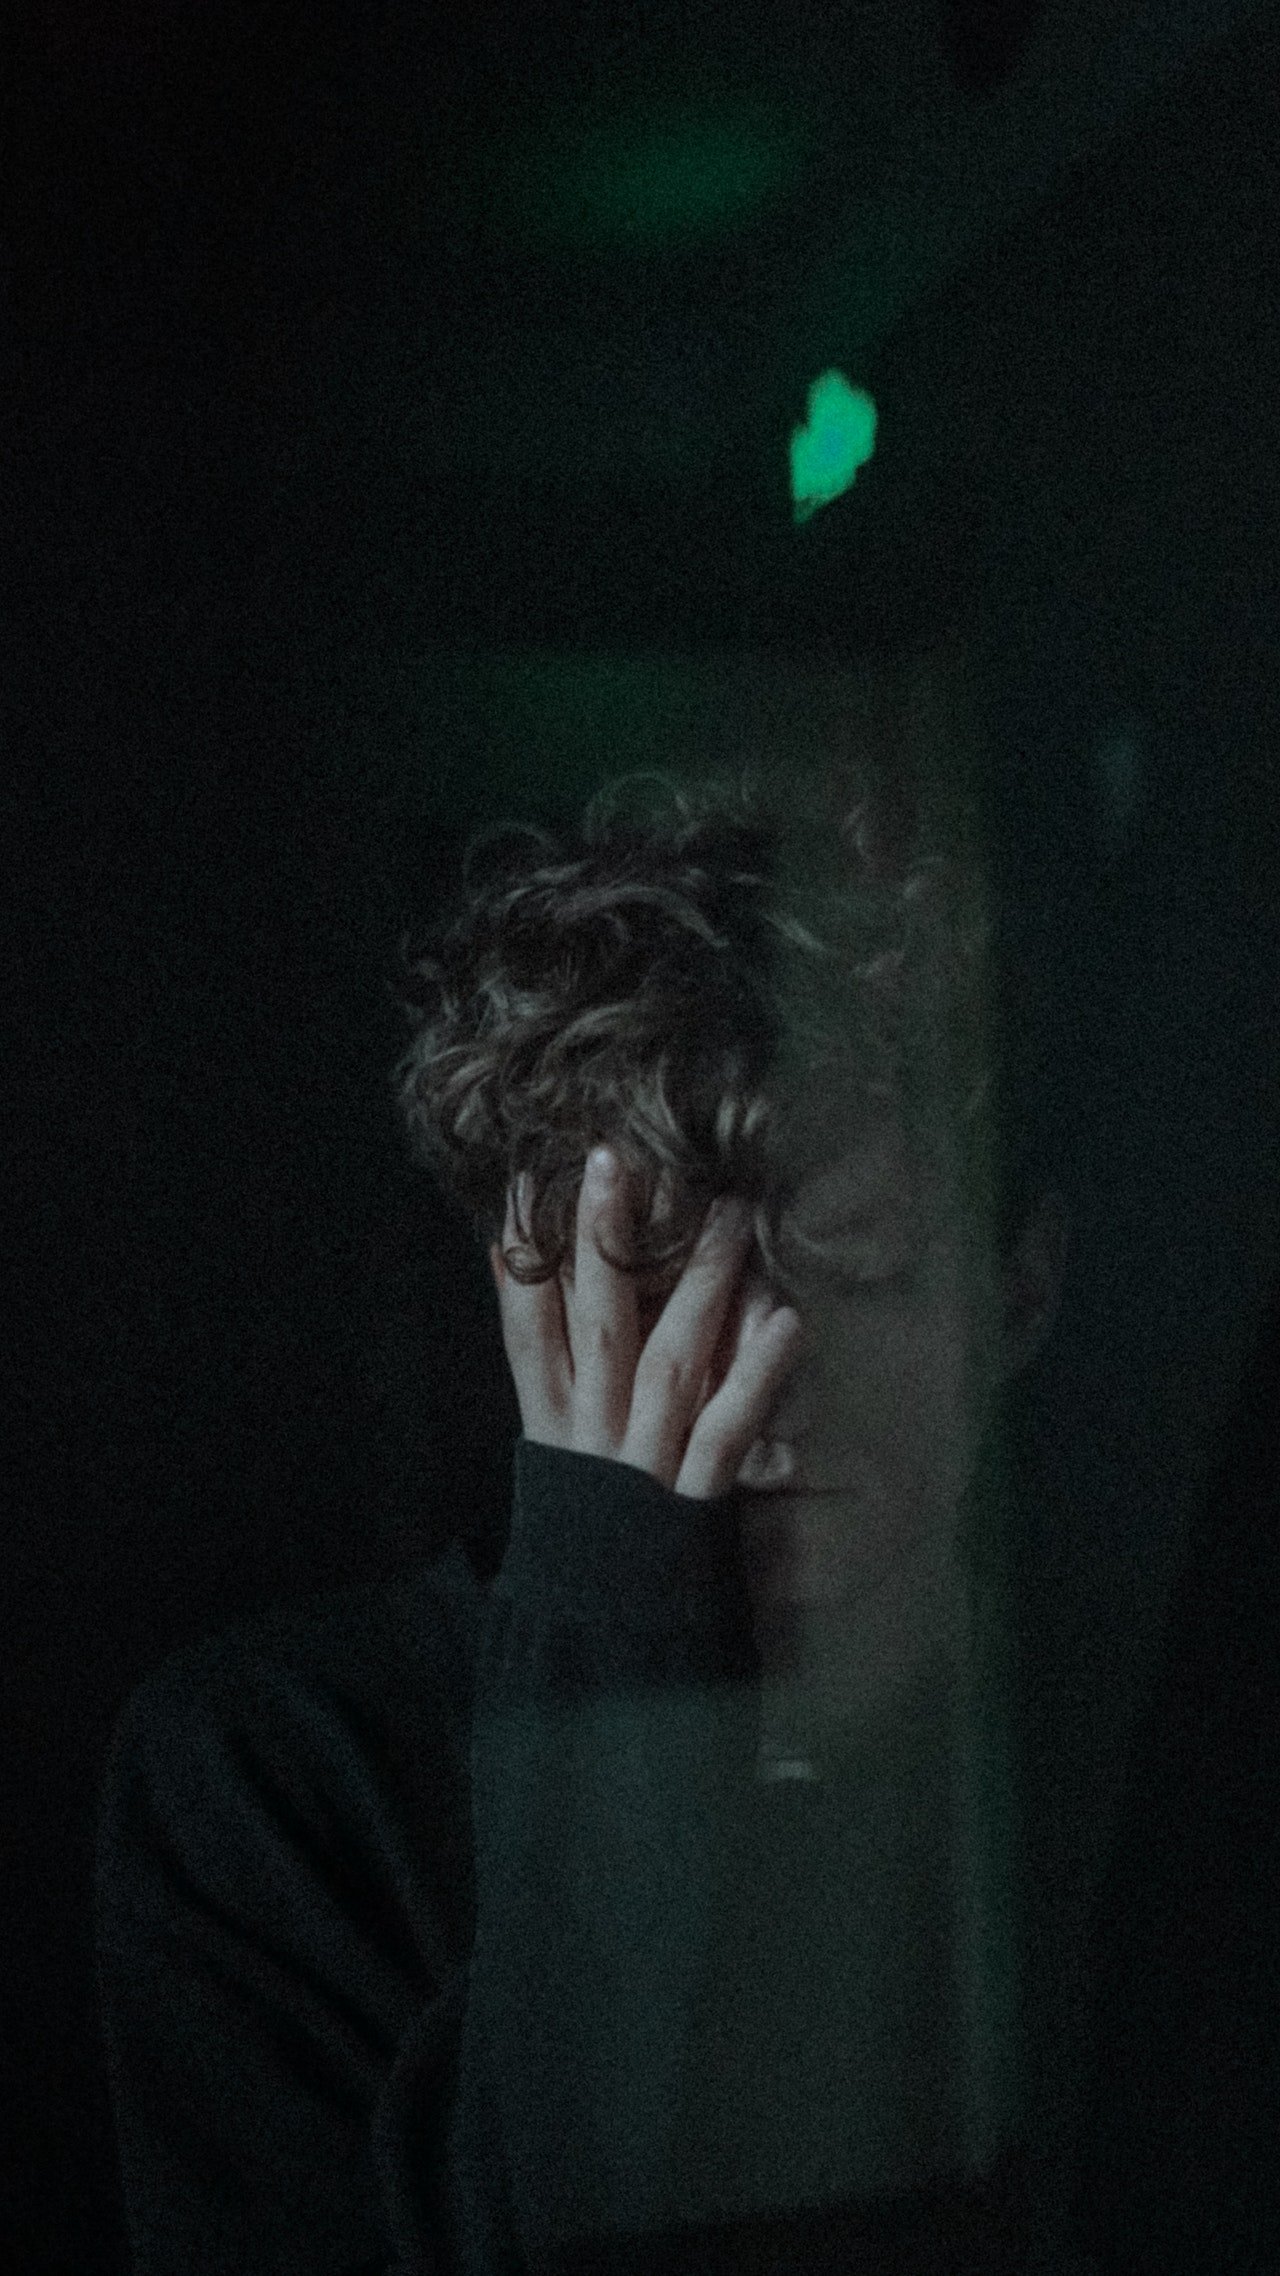 Un joven angustiado con su mano sobre su rostro. | Foto: Pexels